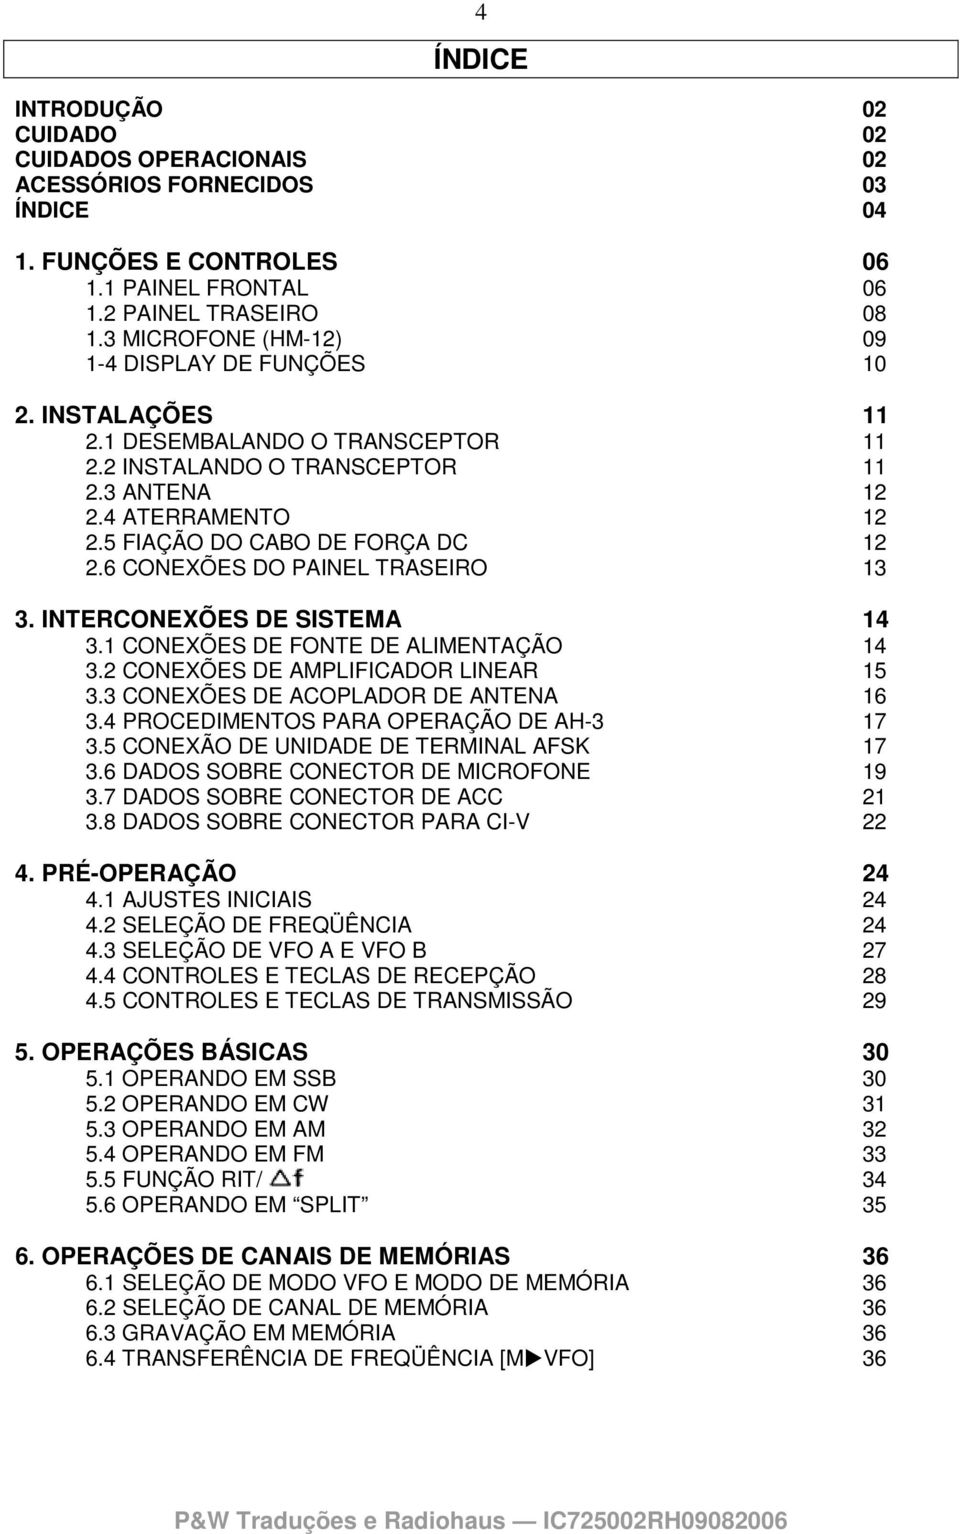 5 FIAÇÃO DO CABO DE FORÇA DC 12 2.6 CONEXÕES DO PAINEL TRASEIRO 13 3. INTERCONEXÕES DE SISTEMA 14 3.1 CONEXÕES DE FONTE DE ALIMENTAÇÃO 14 3.2 CONEXÕES DE AMPLIFICADOR LINEAR 15 3.